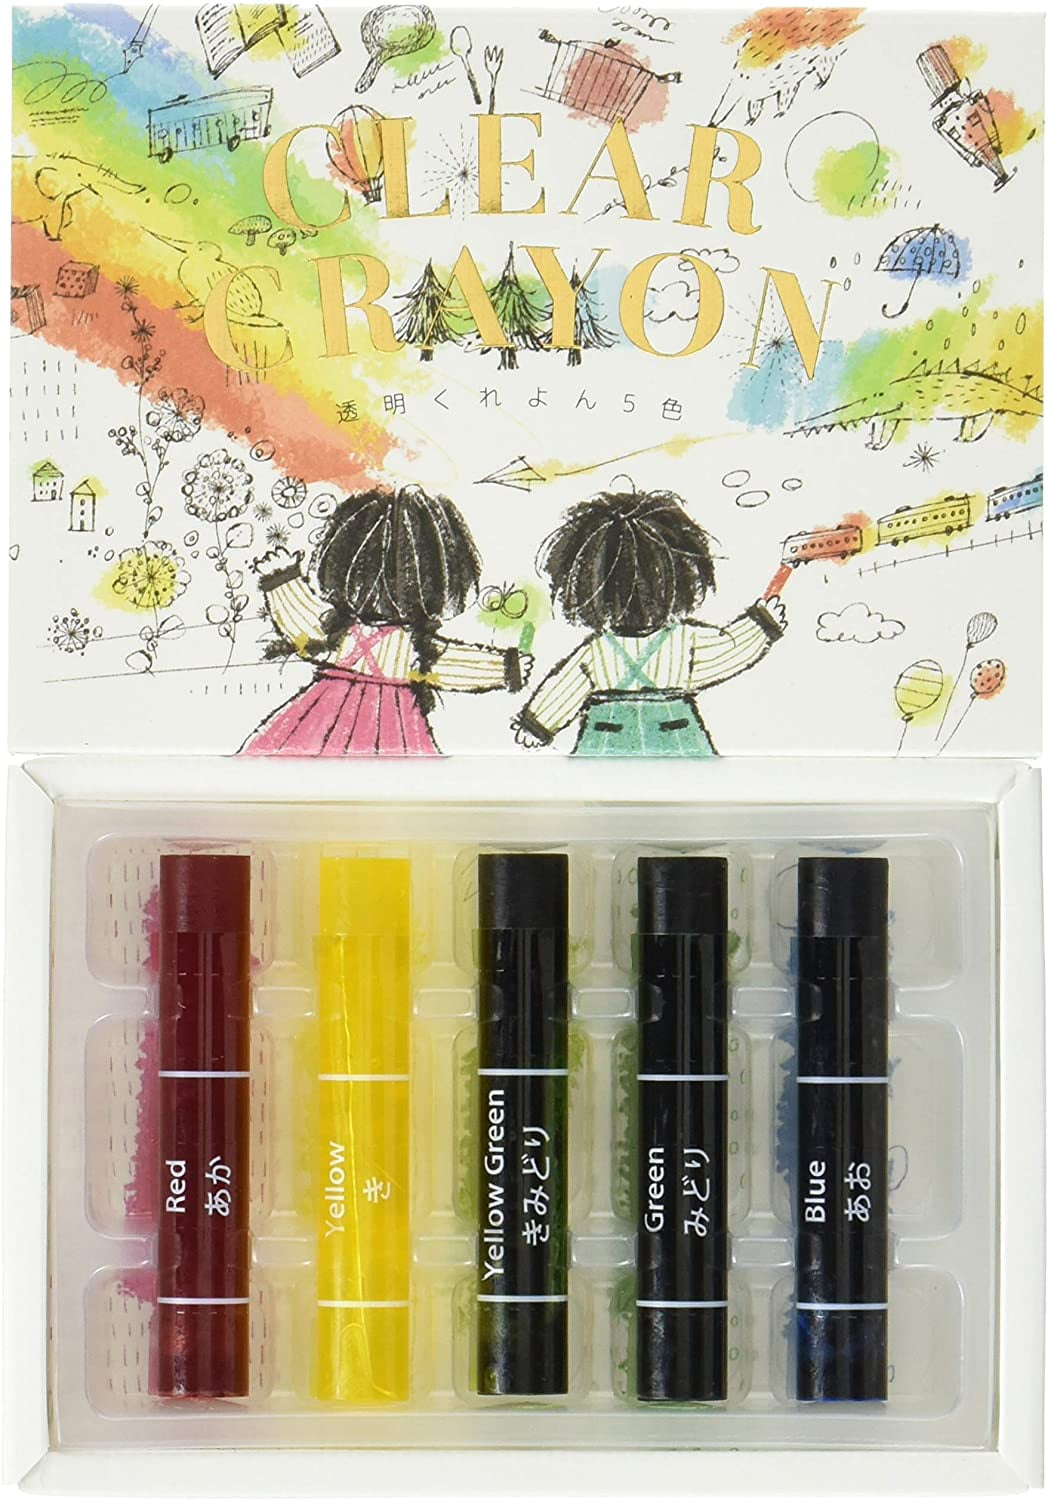 Kokuyo Transparent Crayons